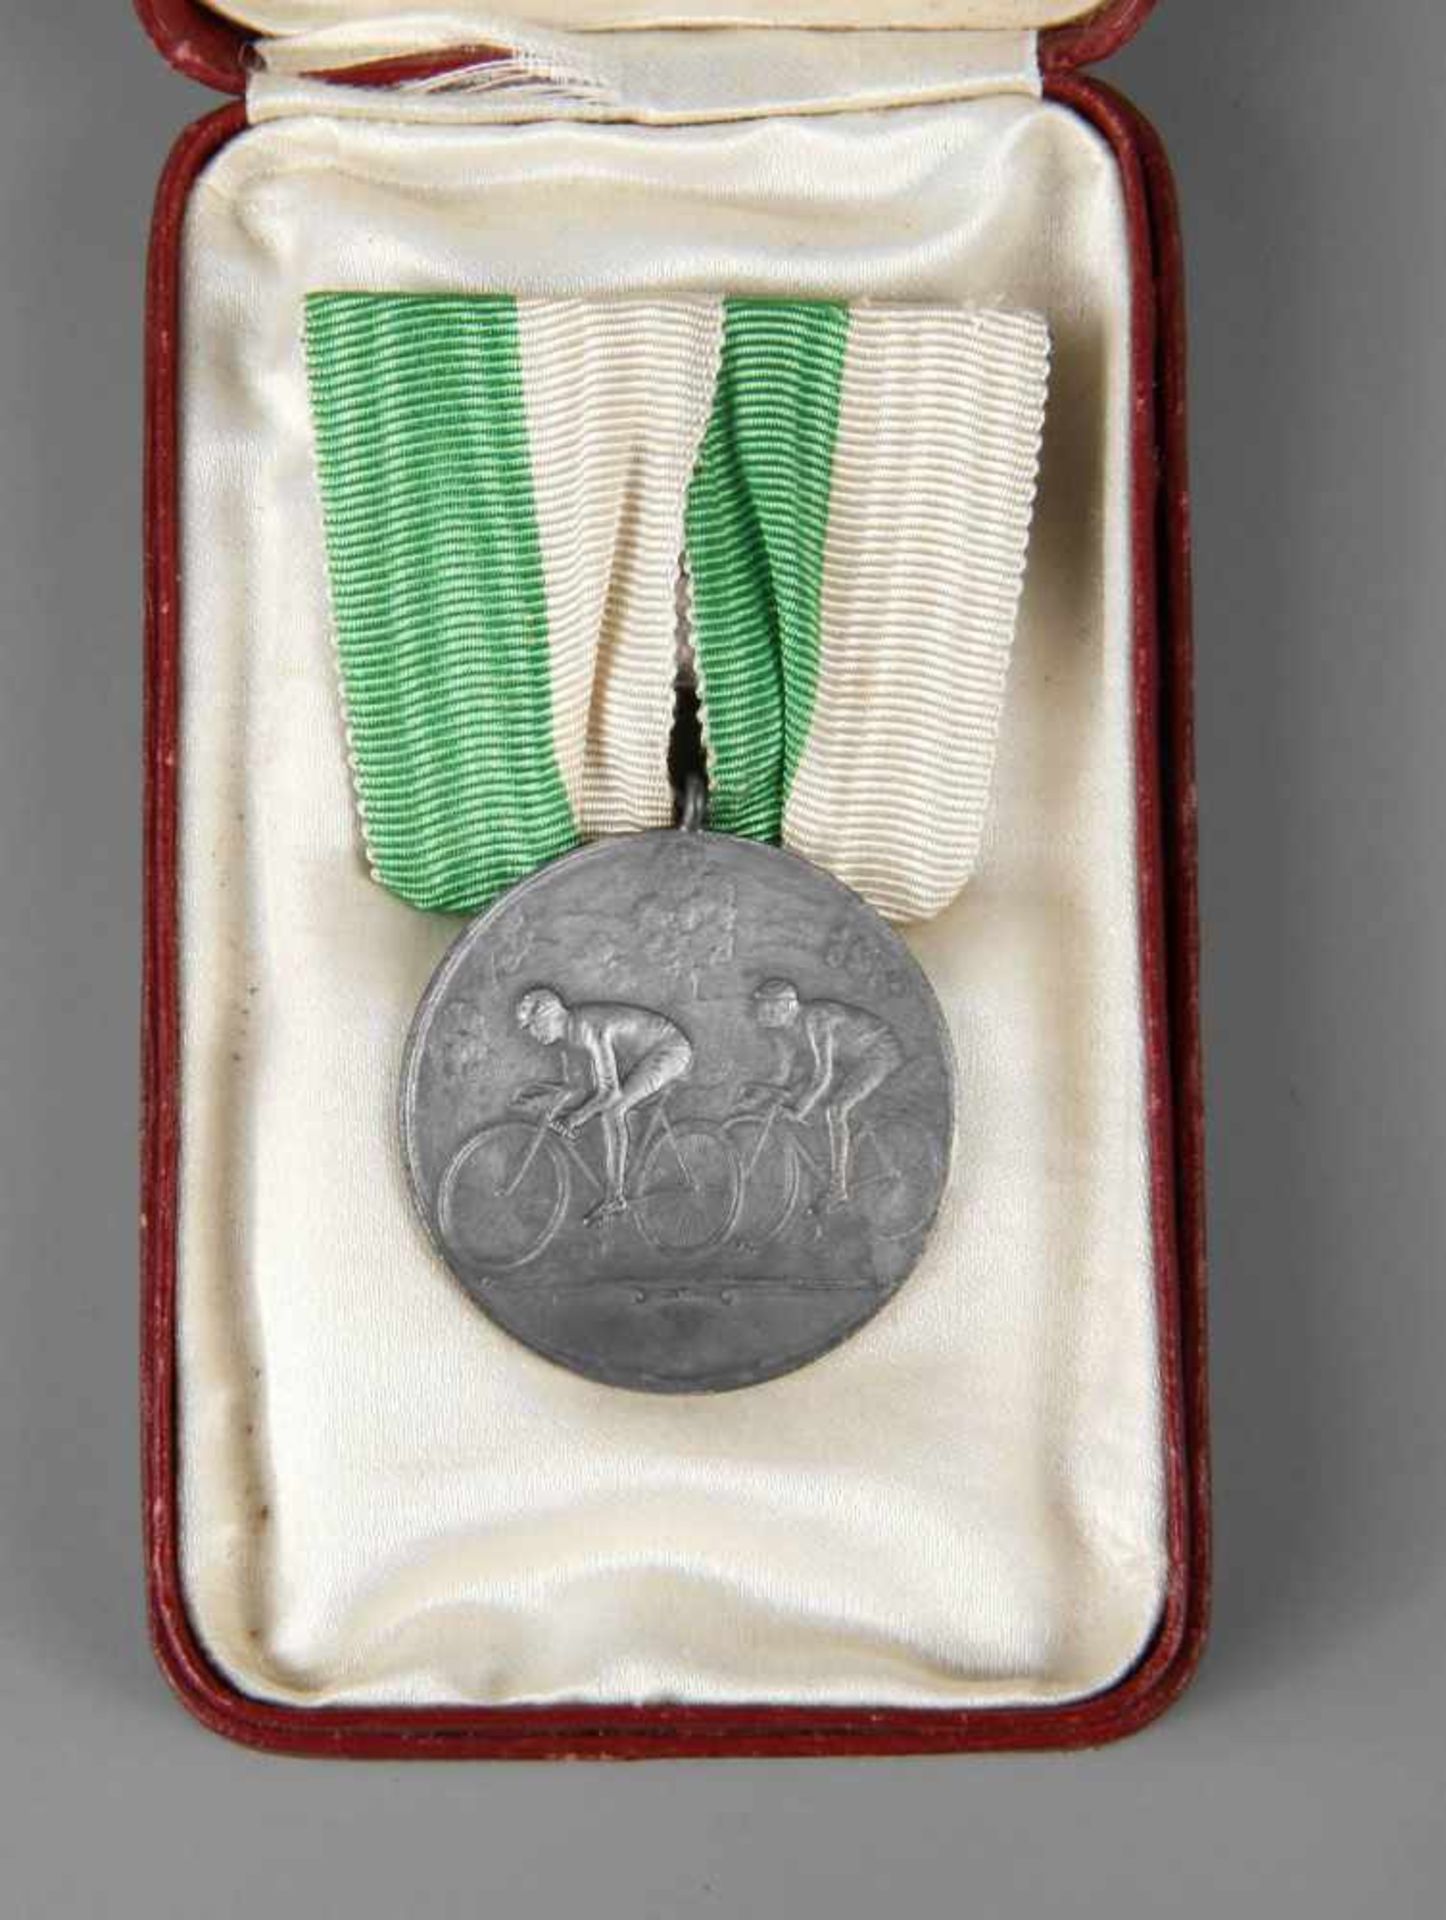 Medaille Sächsischer Radfahrer-Bund 1926, Avers) zwei Radfahrer beim Rennen, Revers) Eichenlaub um